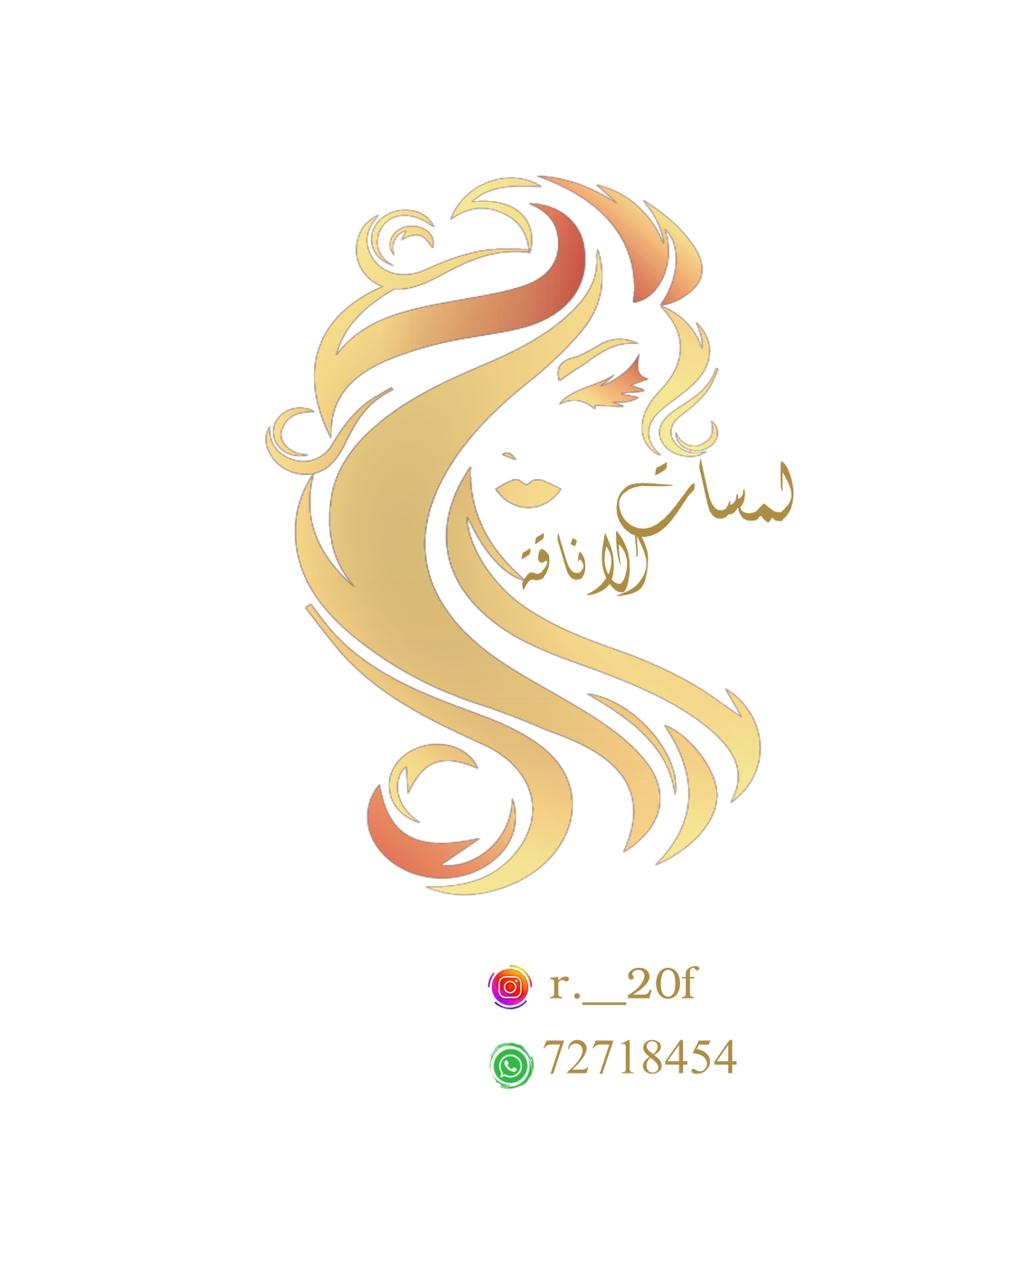 salon-logo